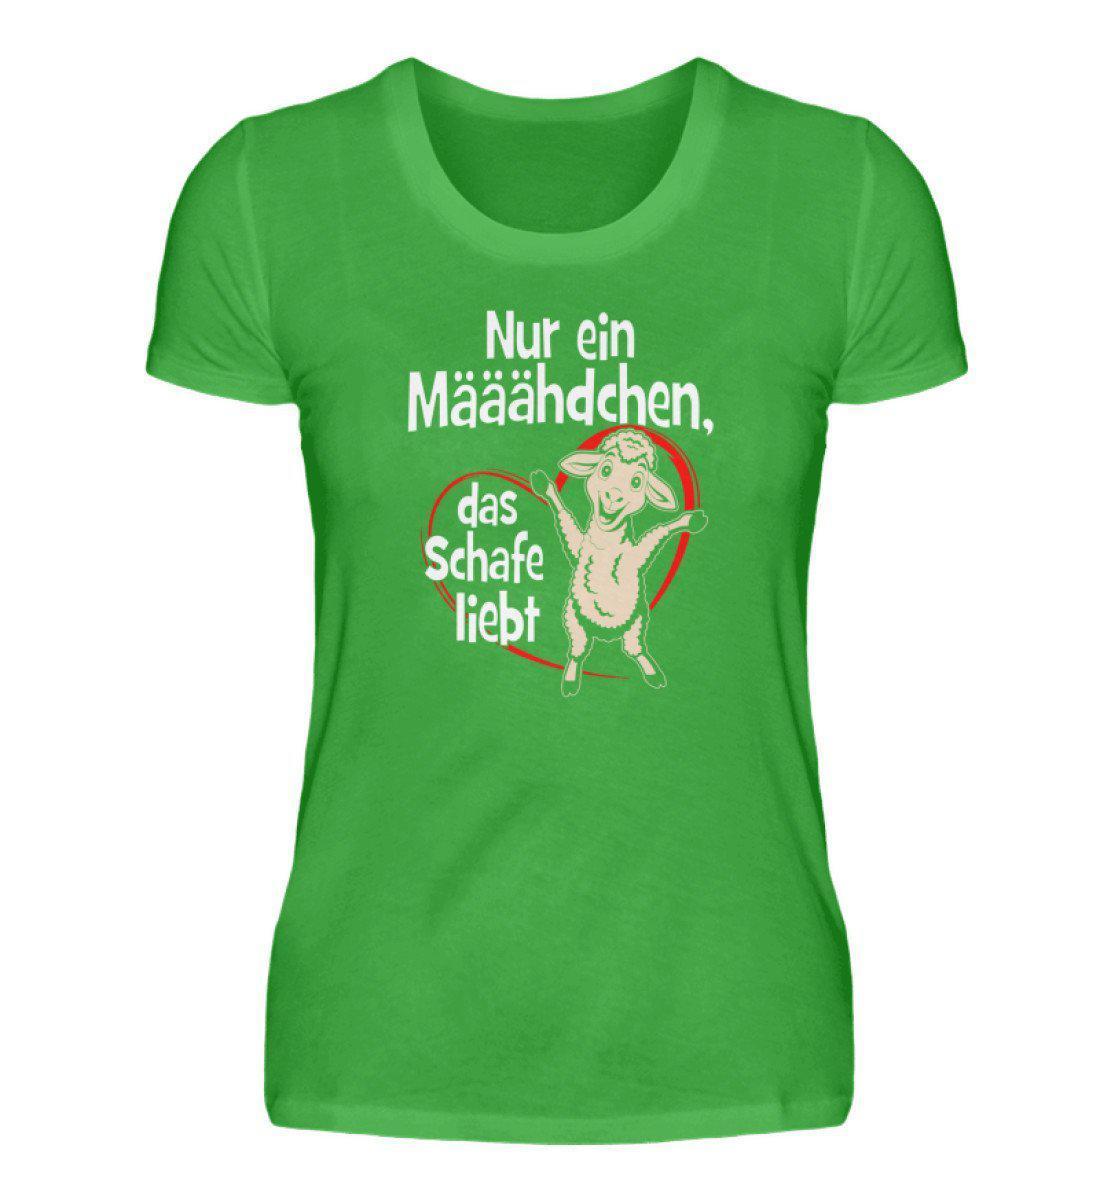 Mädchen liebt Schafe · Damen T-Shirt-Damen Basic T-Shirt-Green Apple-S-Agrarstarz